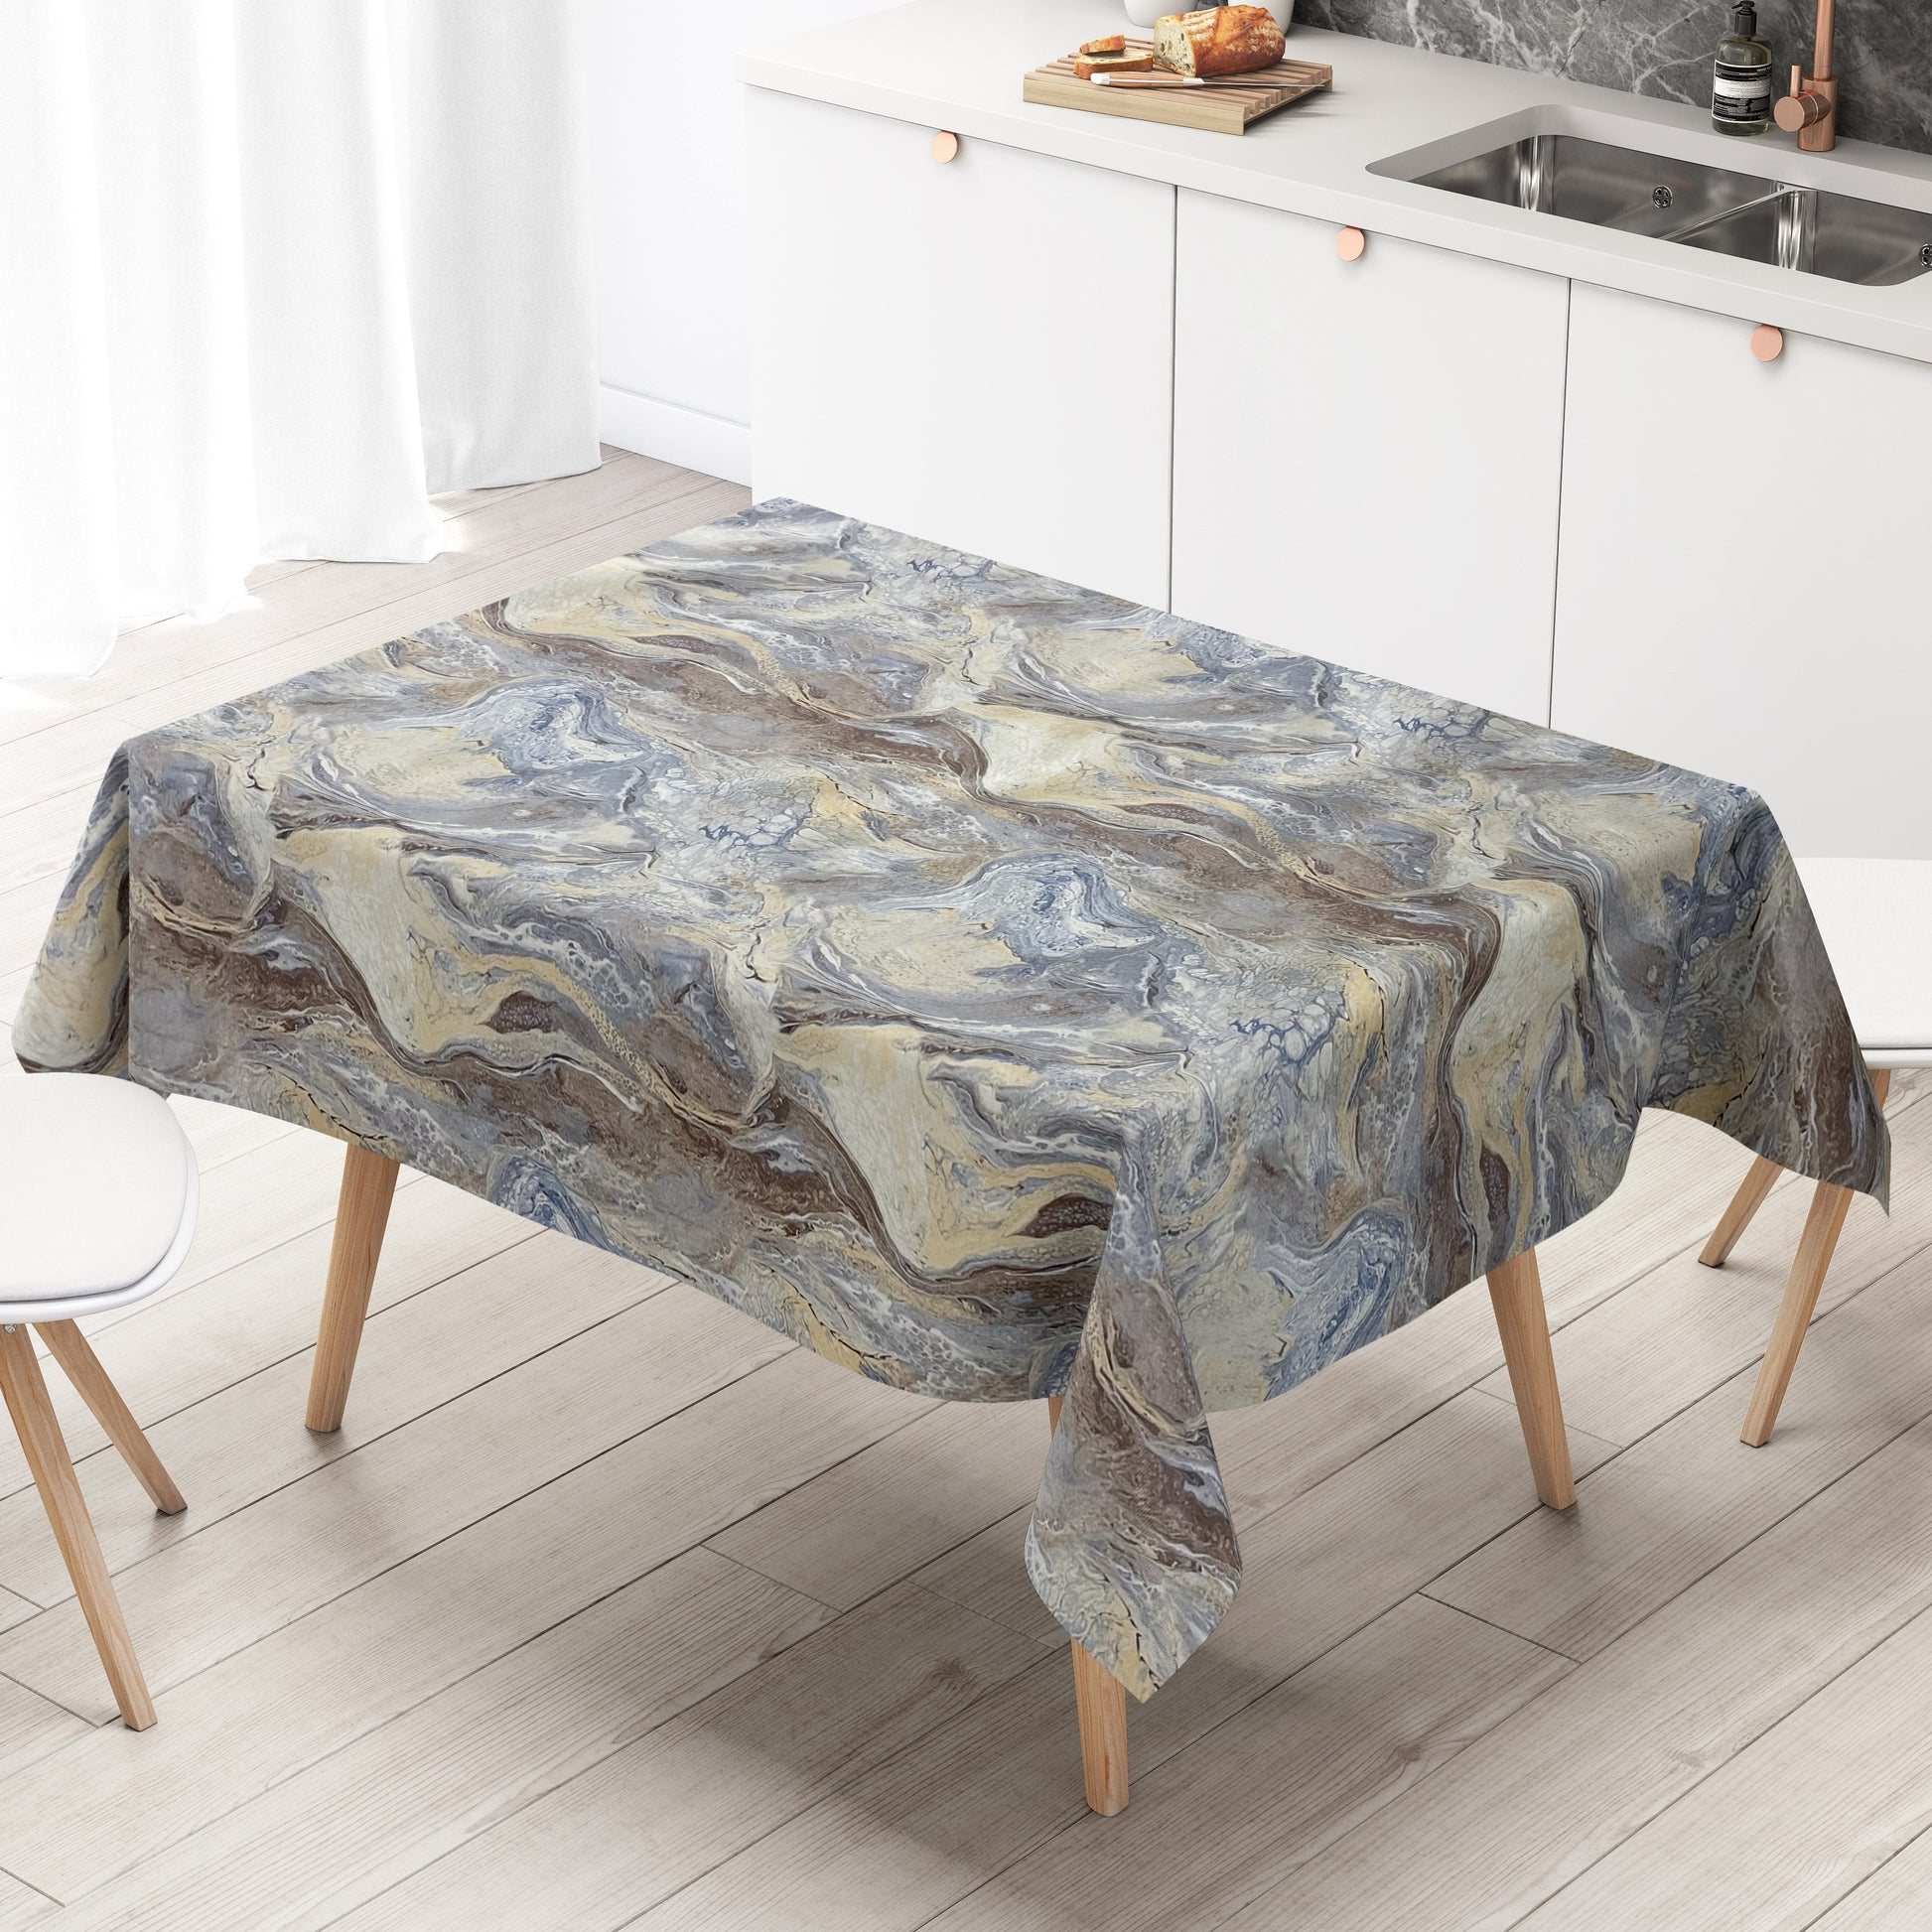 Wachstuch Tischdecke marmoriert blau braun beige